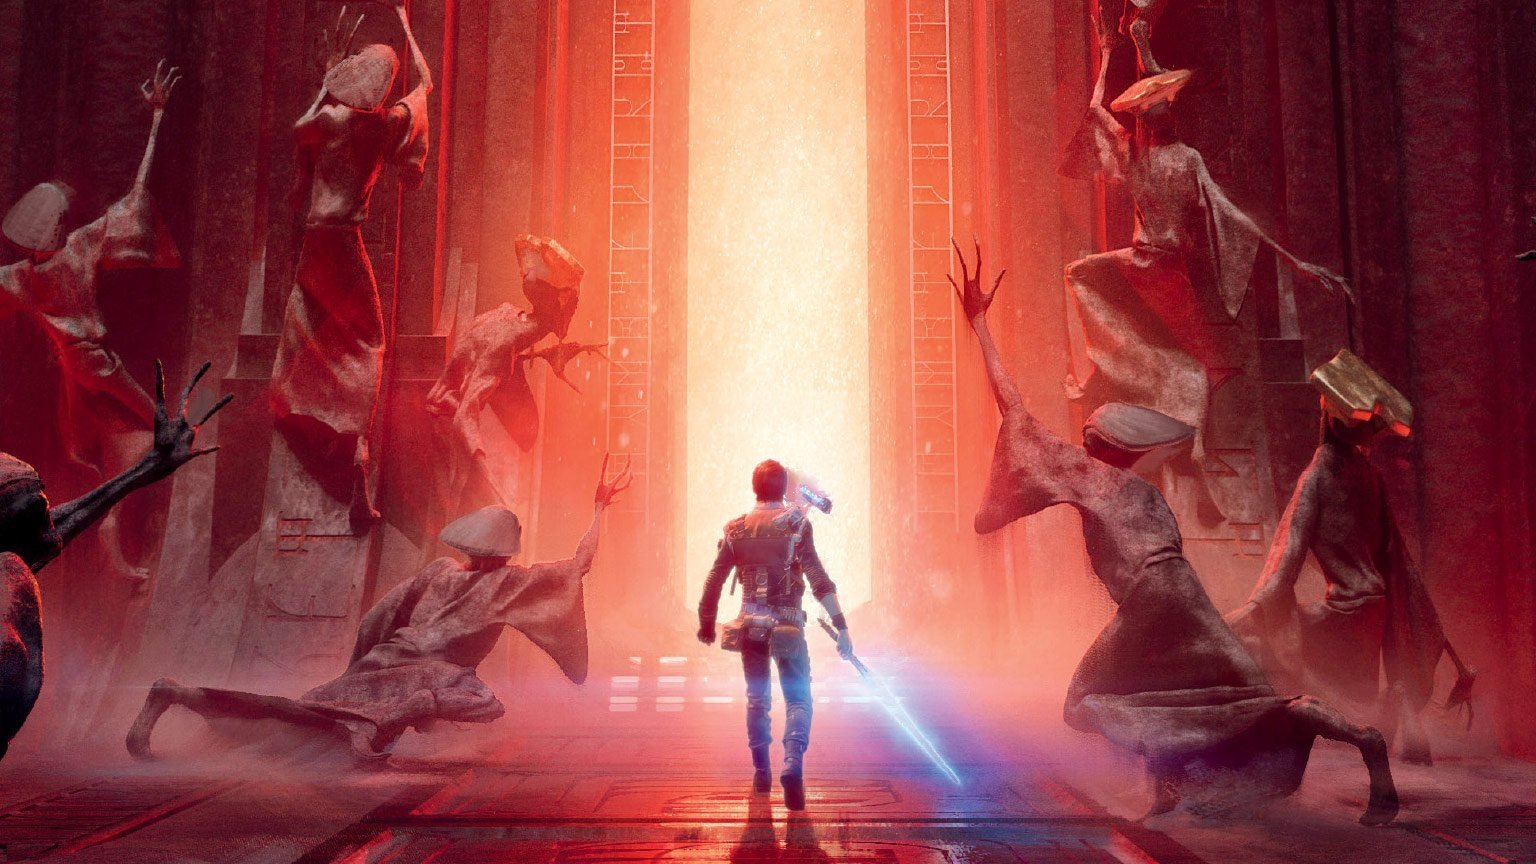 Los planes de EA con Star Wars pasan por la secuela de Fallen Order en 2022; nada de Battlefront III